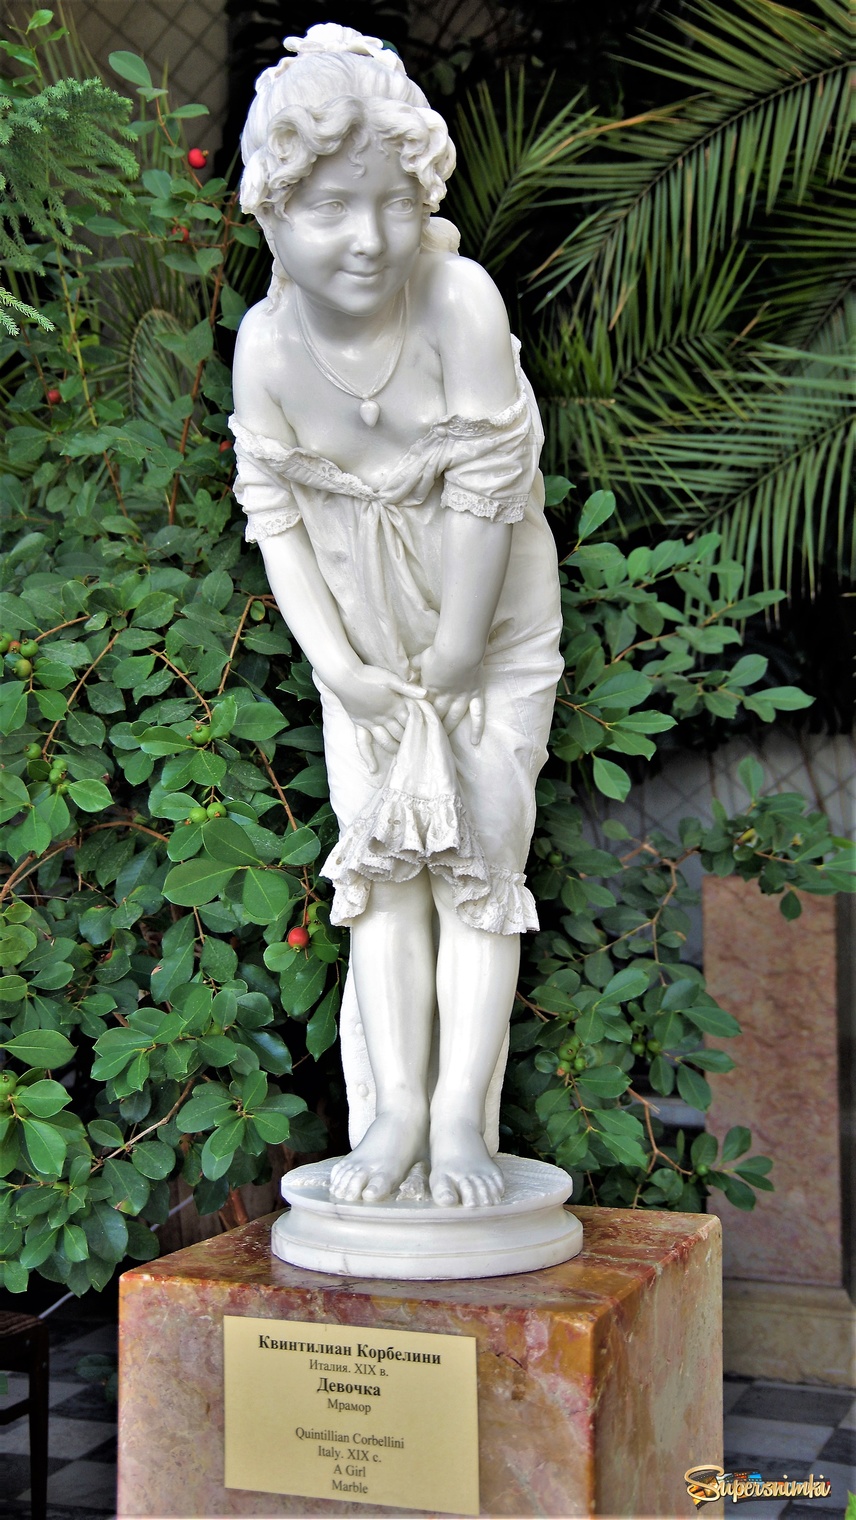 Живая скульптура "Девочка" в Воронцовском дворце 